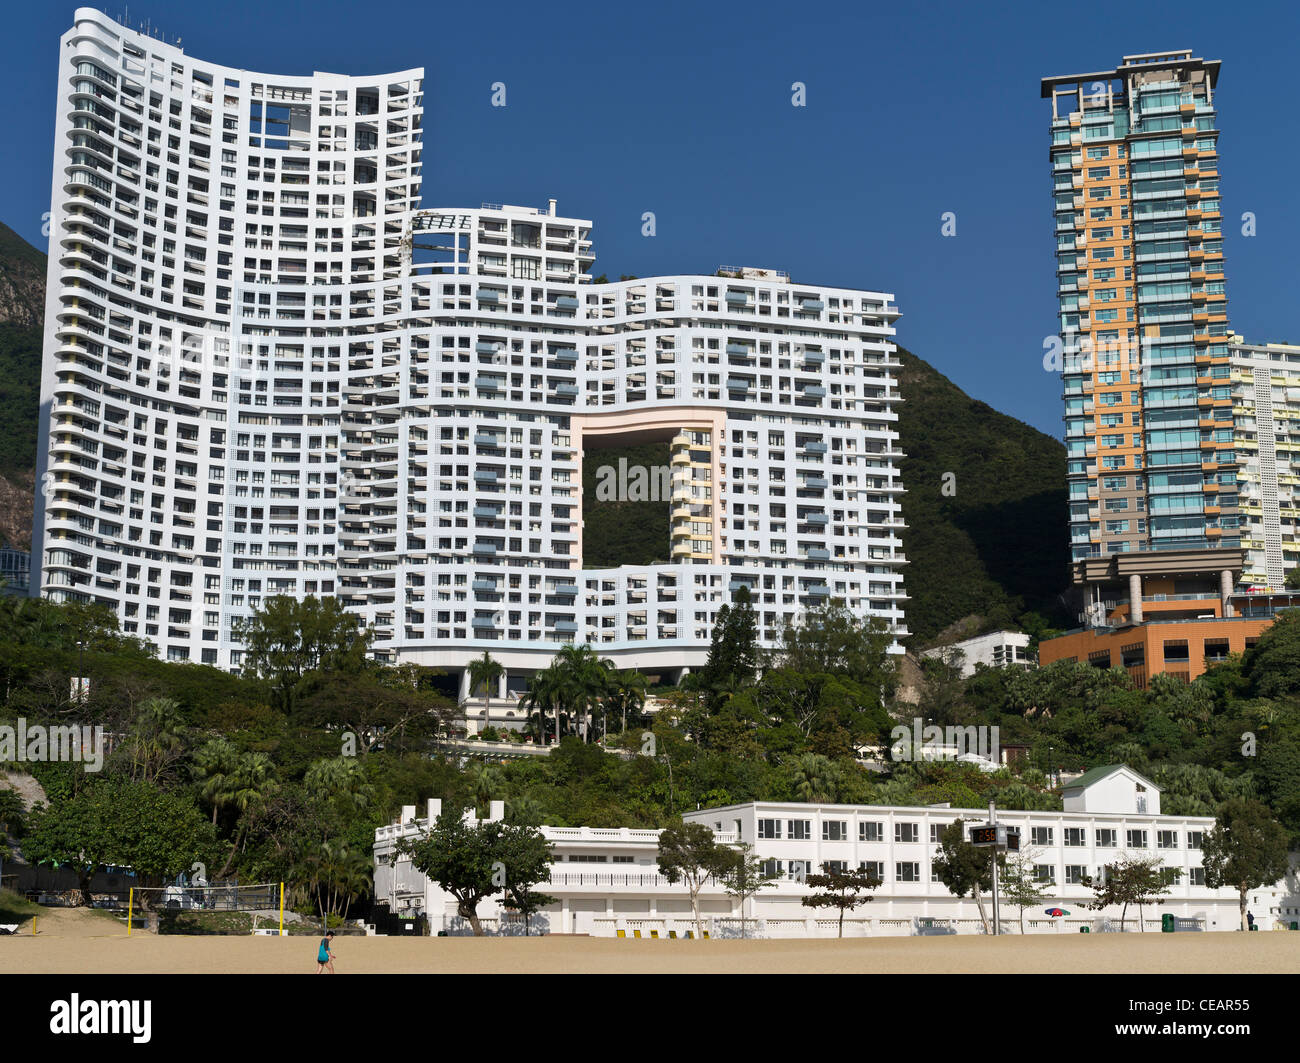 dh Feng Shui REPULSE BAY HONG KONG edificio coloniale moderno e alto piano fung shui buco appartamenti cinesi vecchi nuovi edifici architettura cinese residenziale Foto Stock